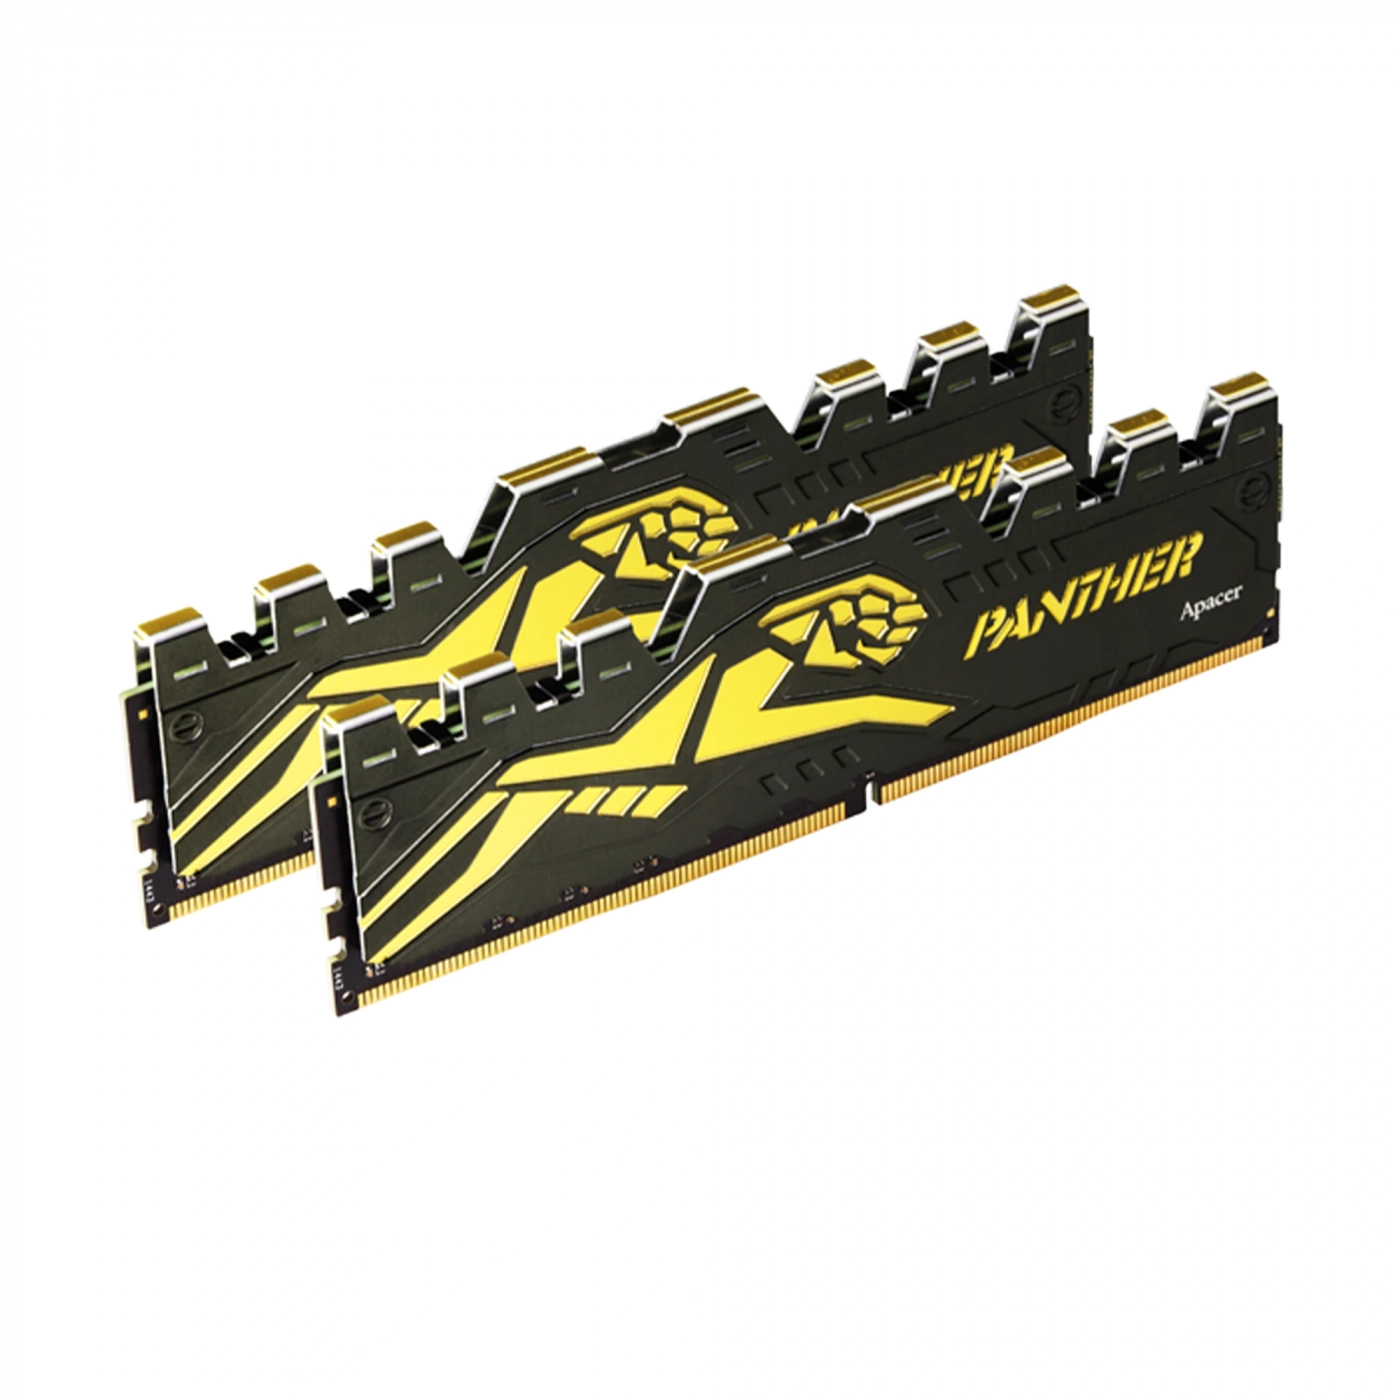 Купить Модуль памяти Apacer Panther DDR4-3200 16GB (2x8GB) - фото 1